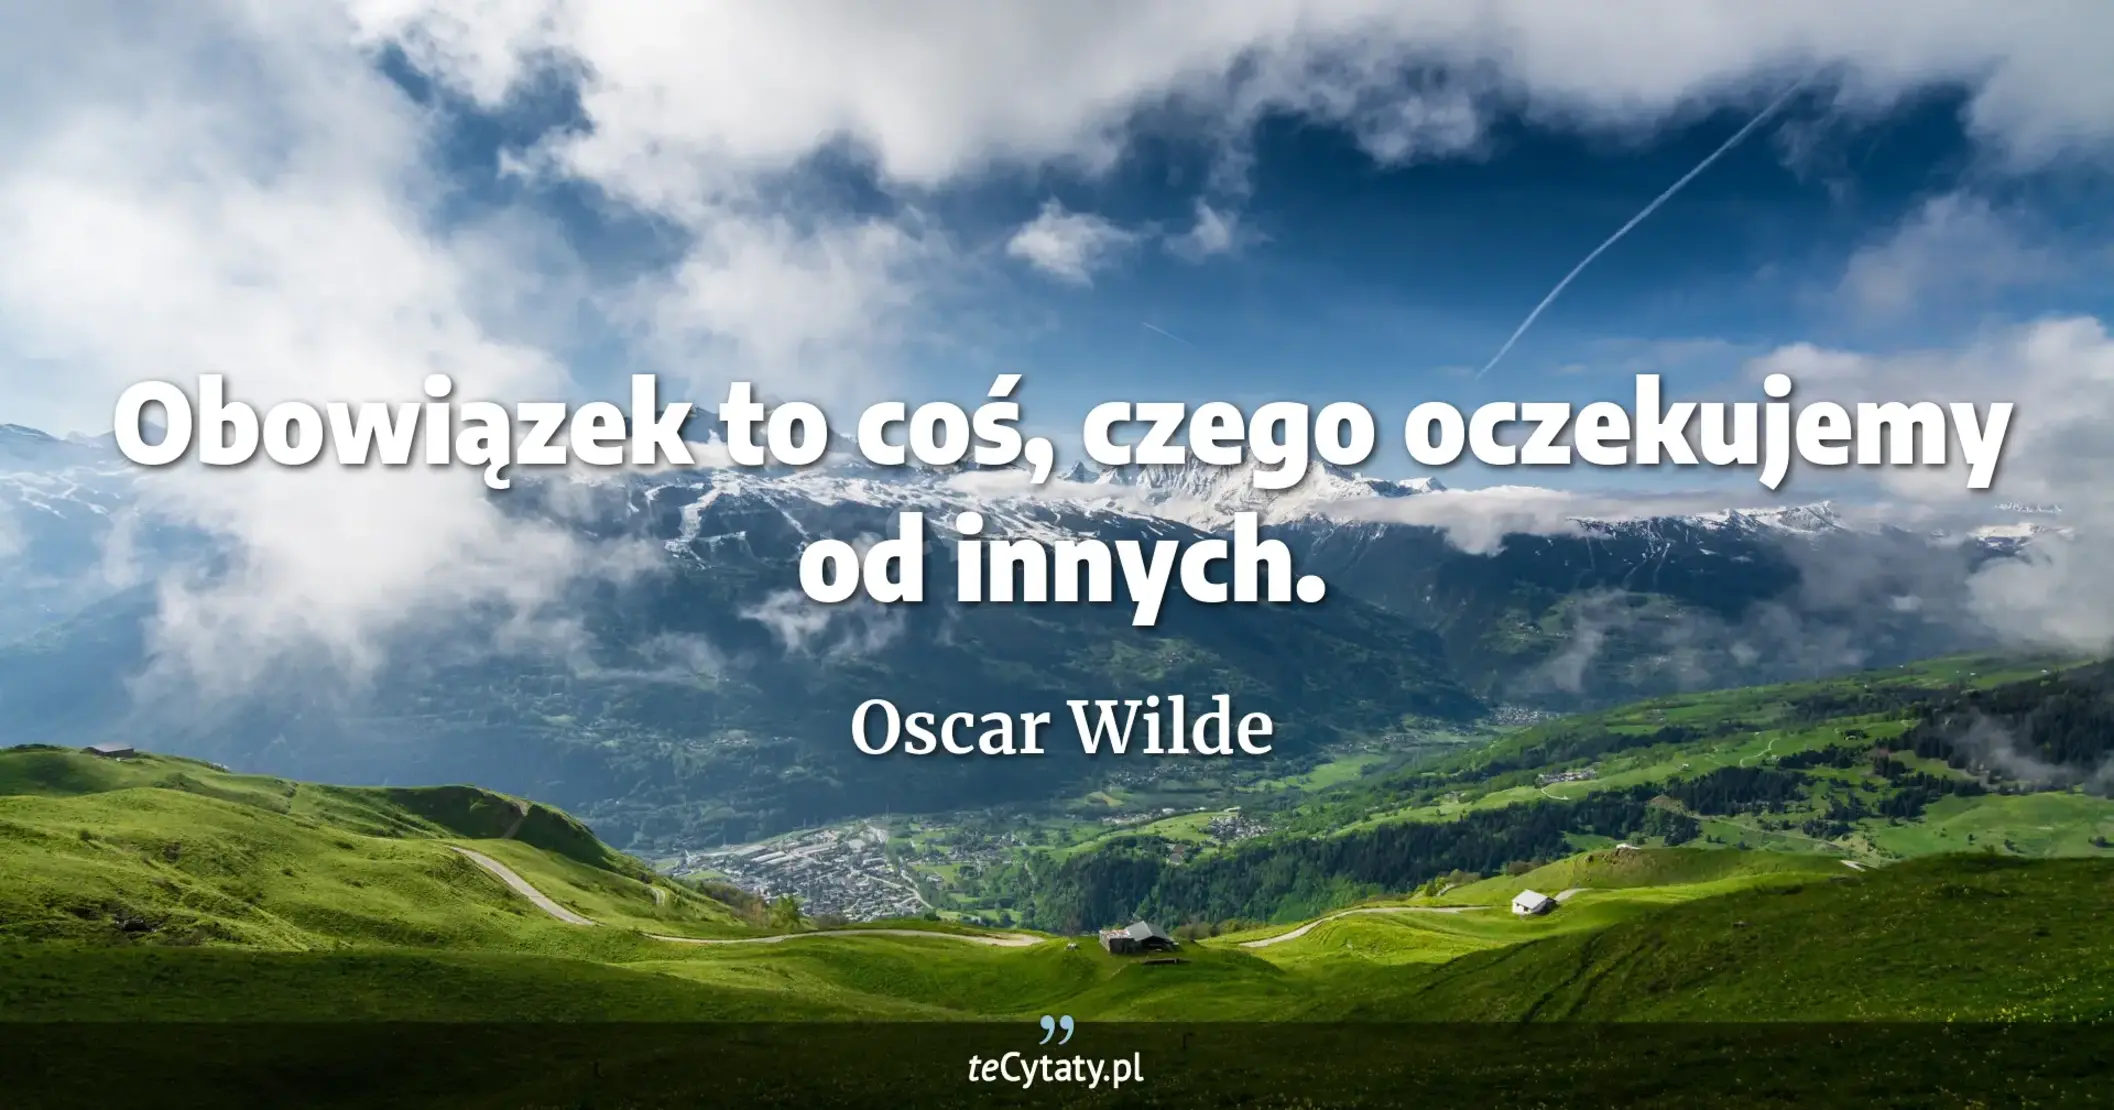 Obowiązek to coś, czego oczekujemy od innych. - Oscar Wilde